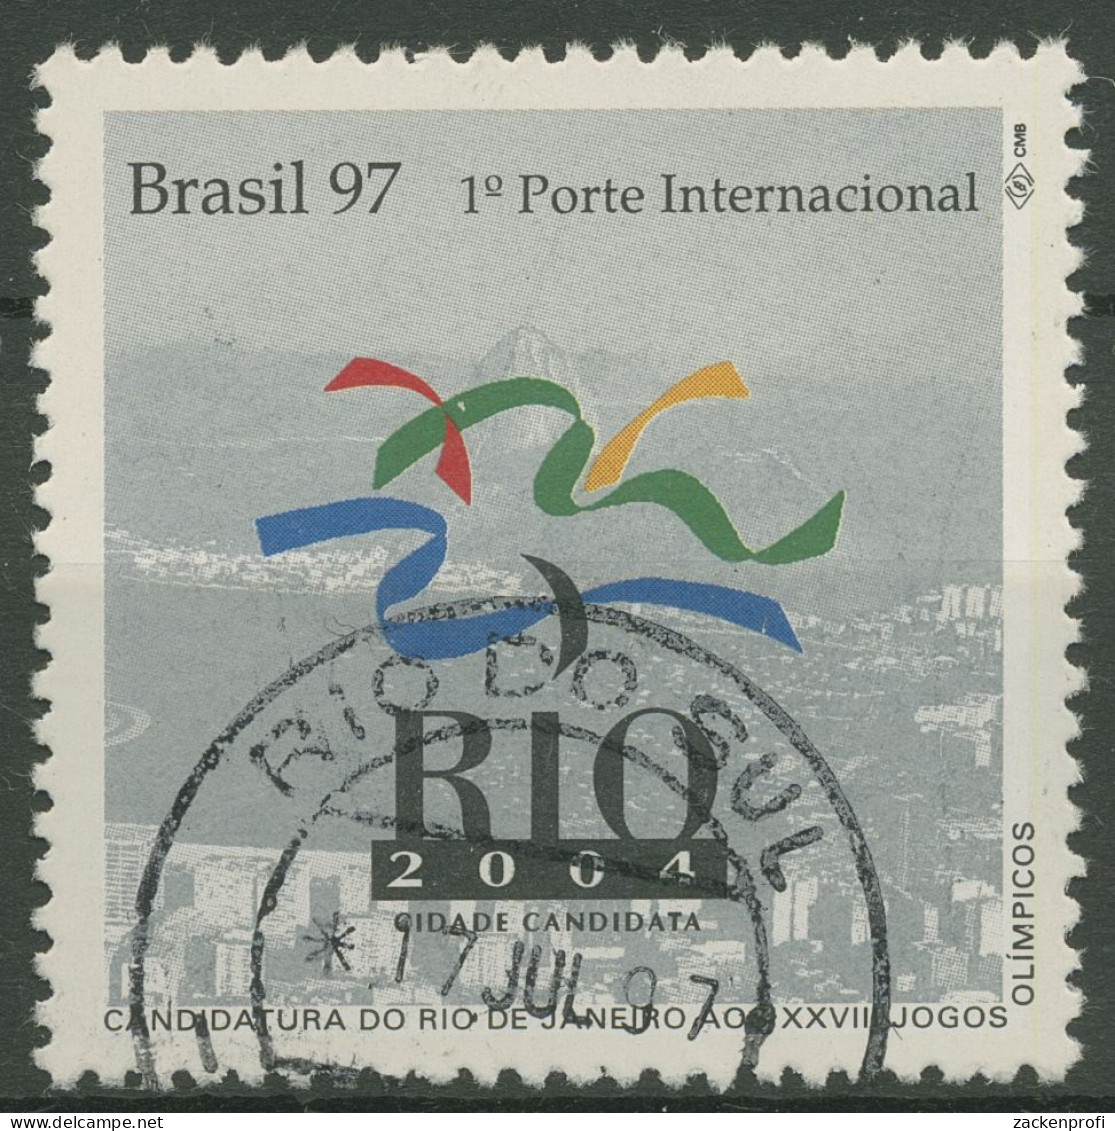 Brasilien 1997 Bewerbung Für 2004 Olympische Sommerspiele 2734 Gestempelt - Gebraucht